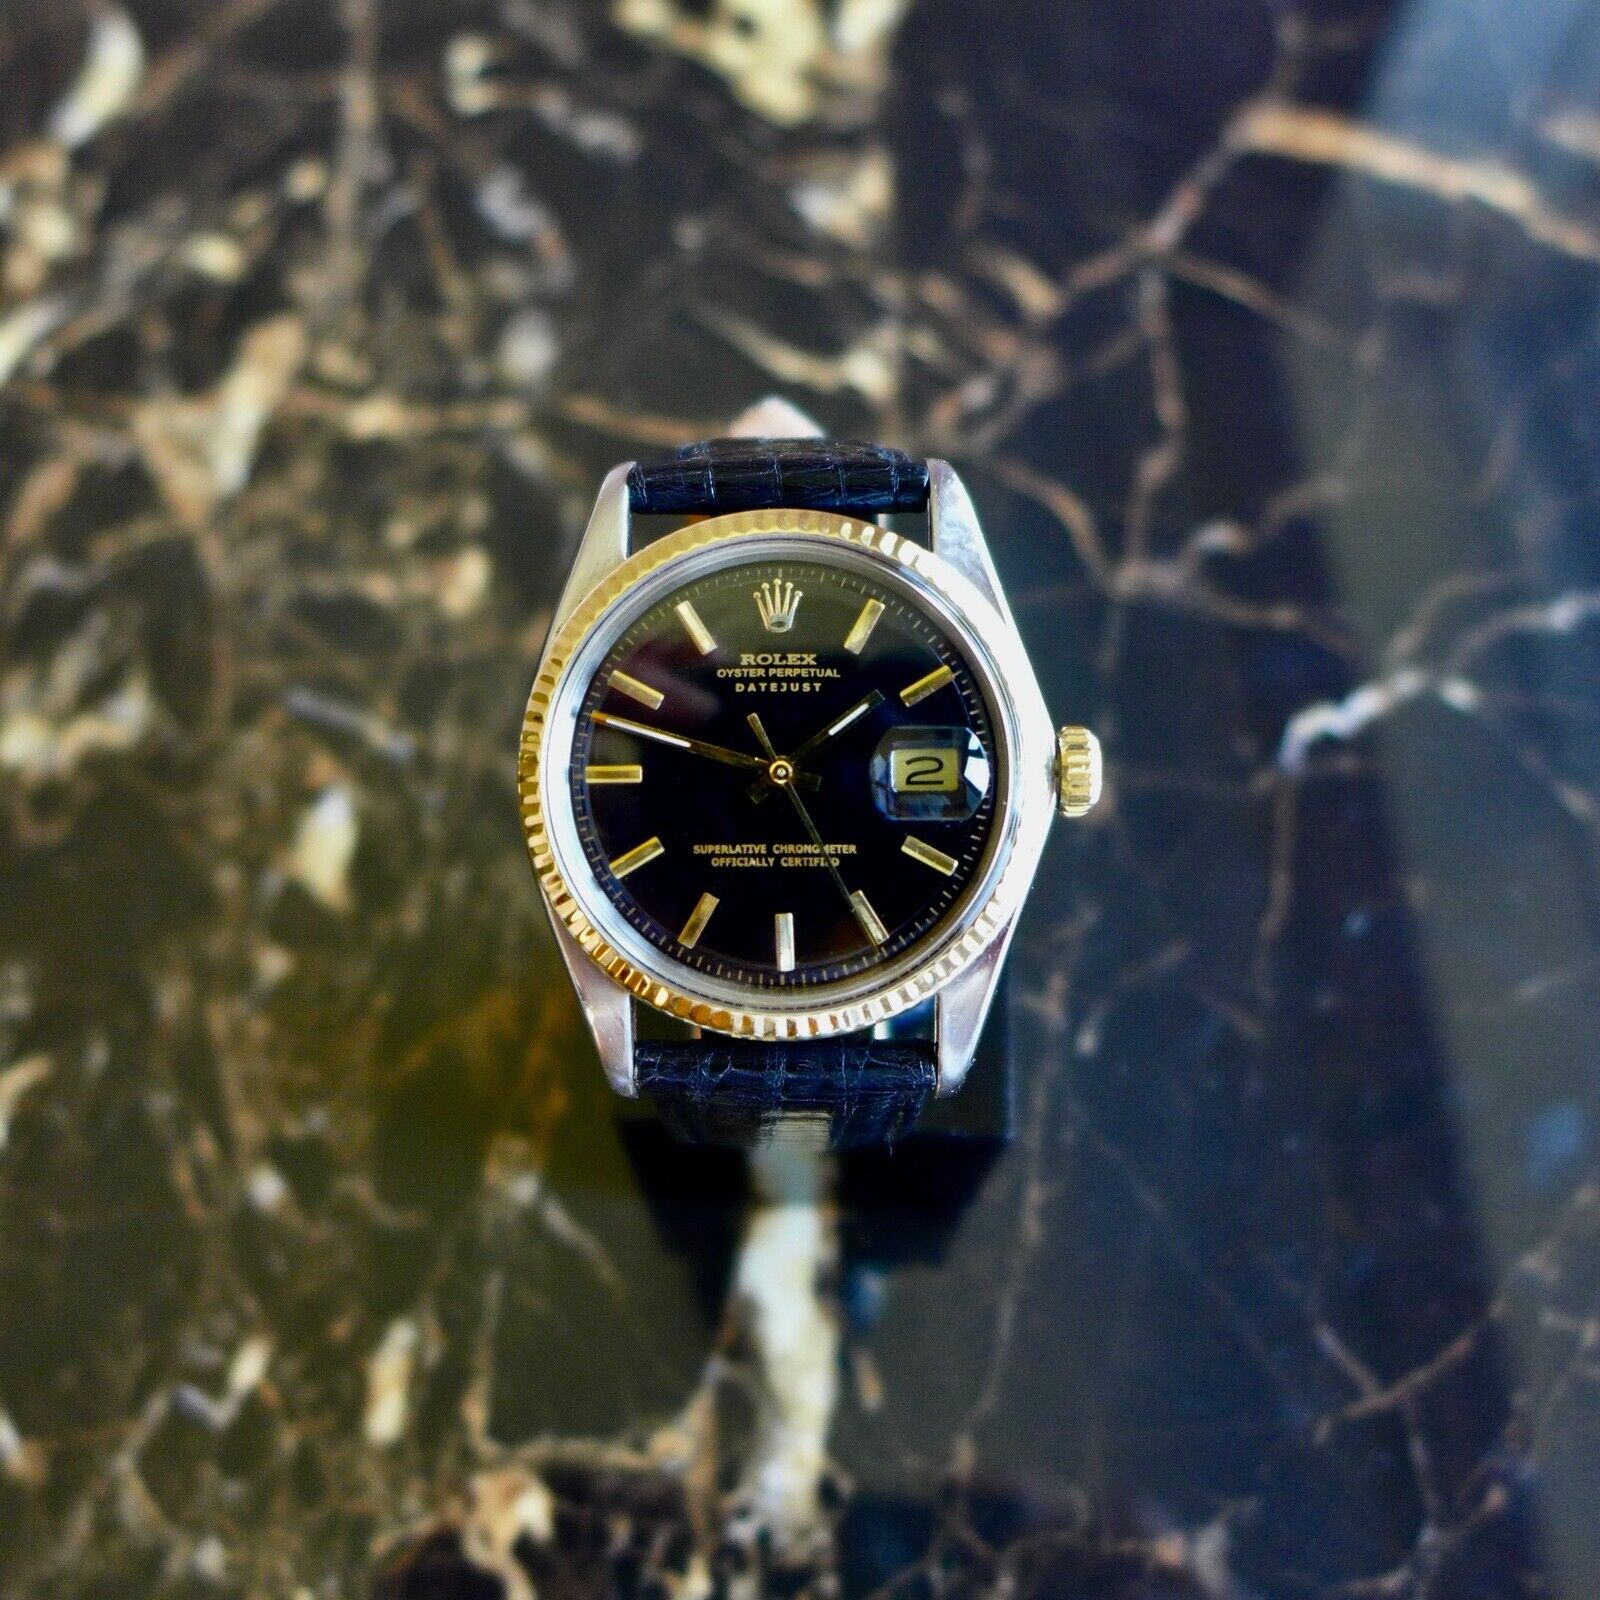 ROLEX デイトジャスト Ref.1601 シャンパンゴールド アンティーク品 メンズ 腕時計